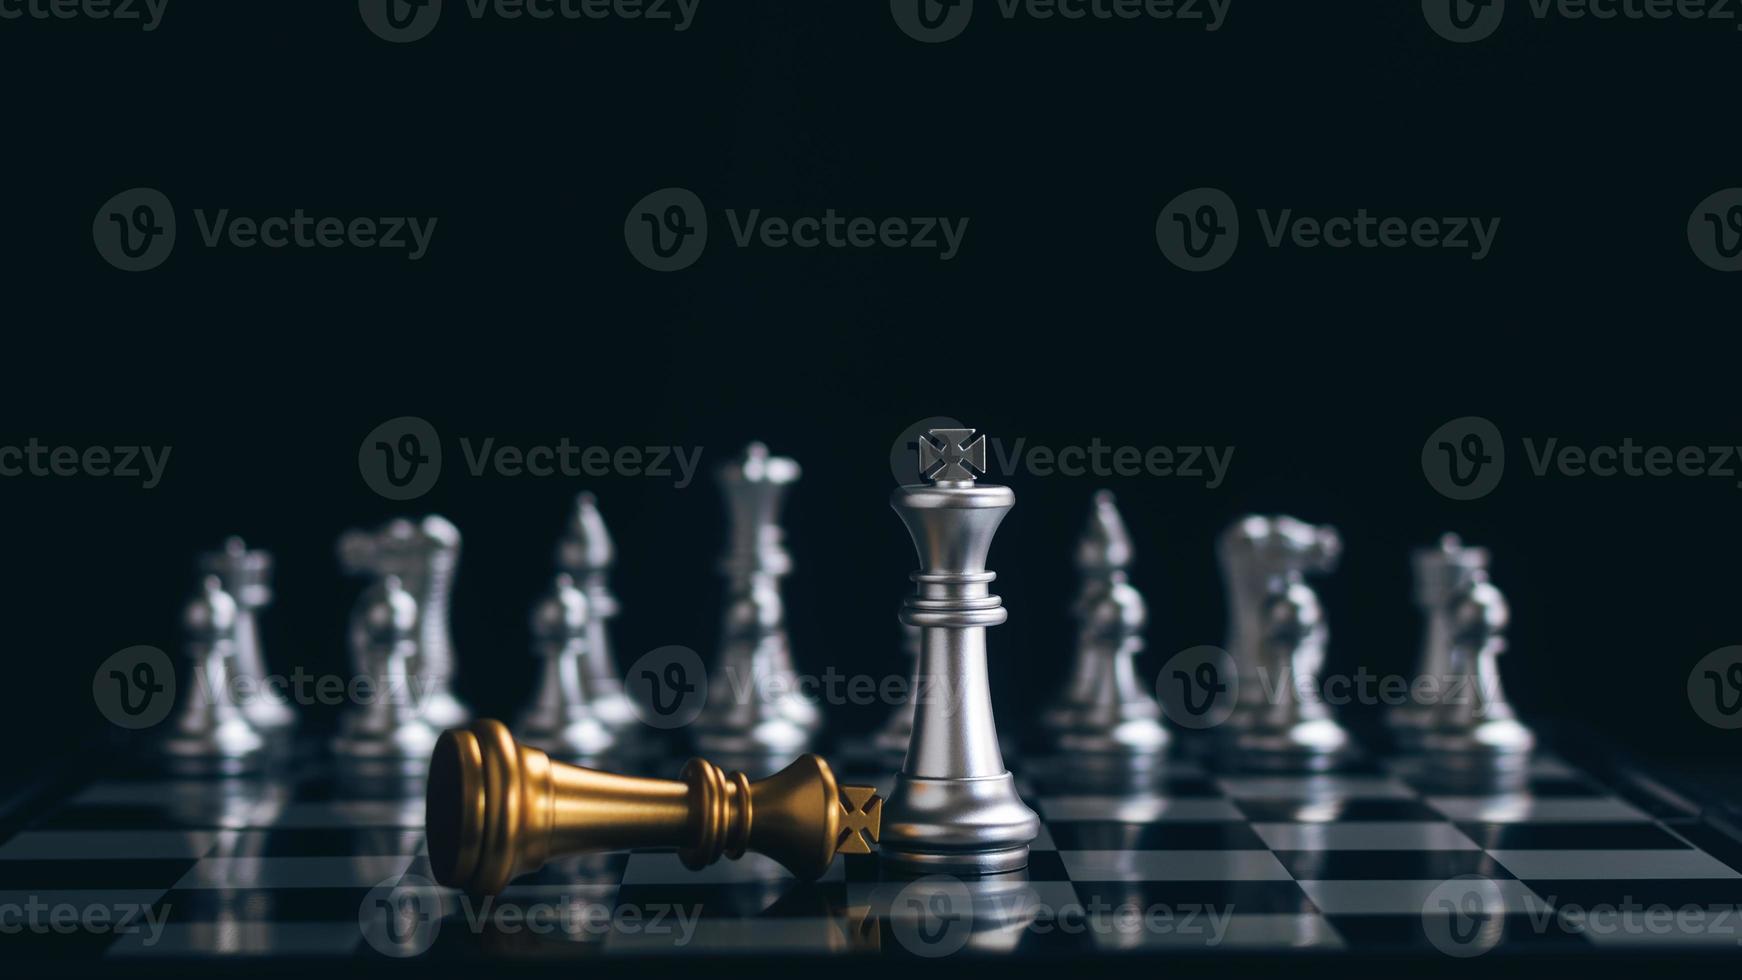 primer plano ajedrez rey reina obispo caballero torre, equipo de negocios y estrategia de liderazgo, trabajo en equipo en el concepto de tablero de ajedrez, administración y gestión de una organización o empresa. foto